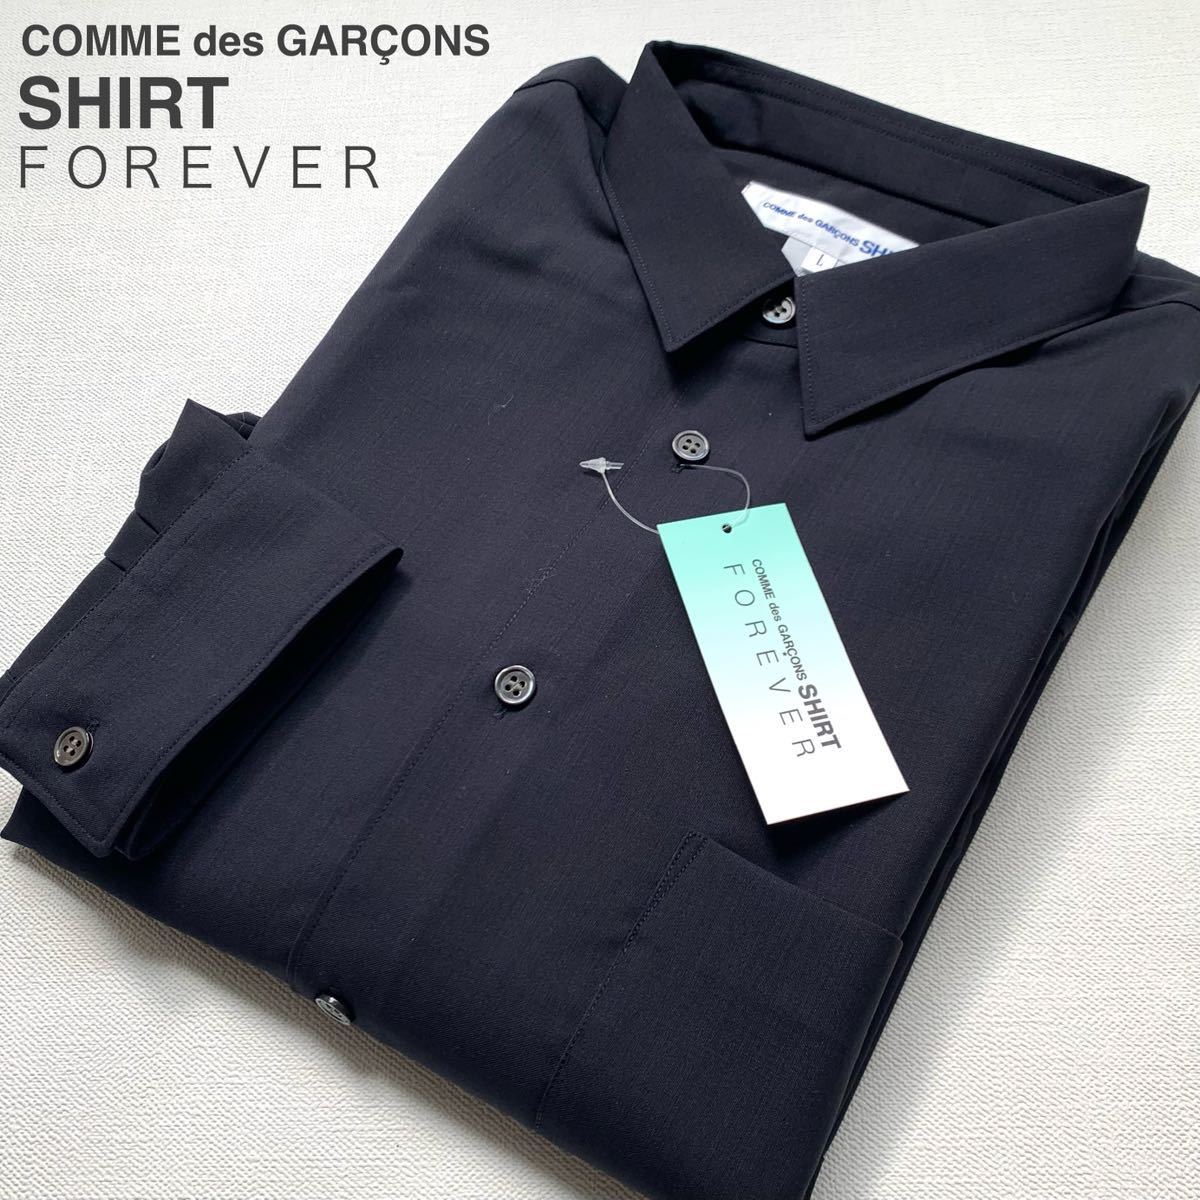 新品 フランス製 コムデギャルソンシャツ FOREVER フォーエバー ウール 長袖 シャツ L 定4.73万 ネイビー 2022AW ナロークラシック 定番